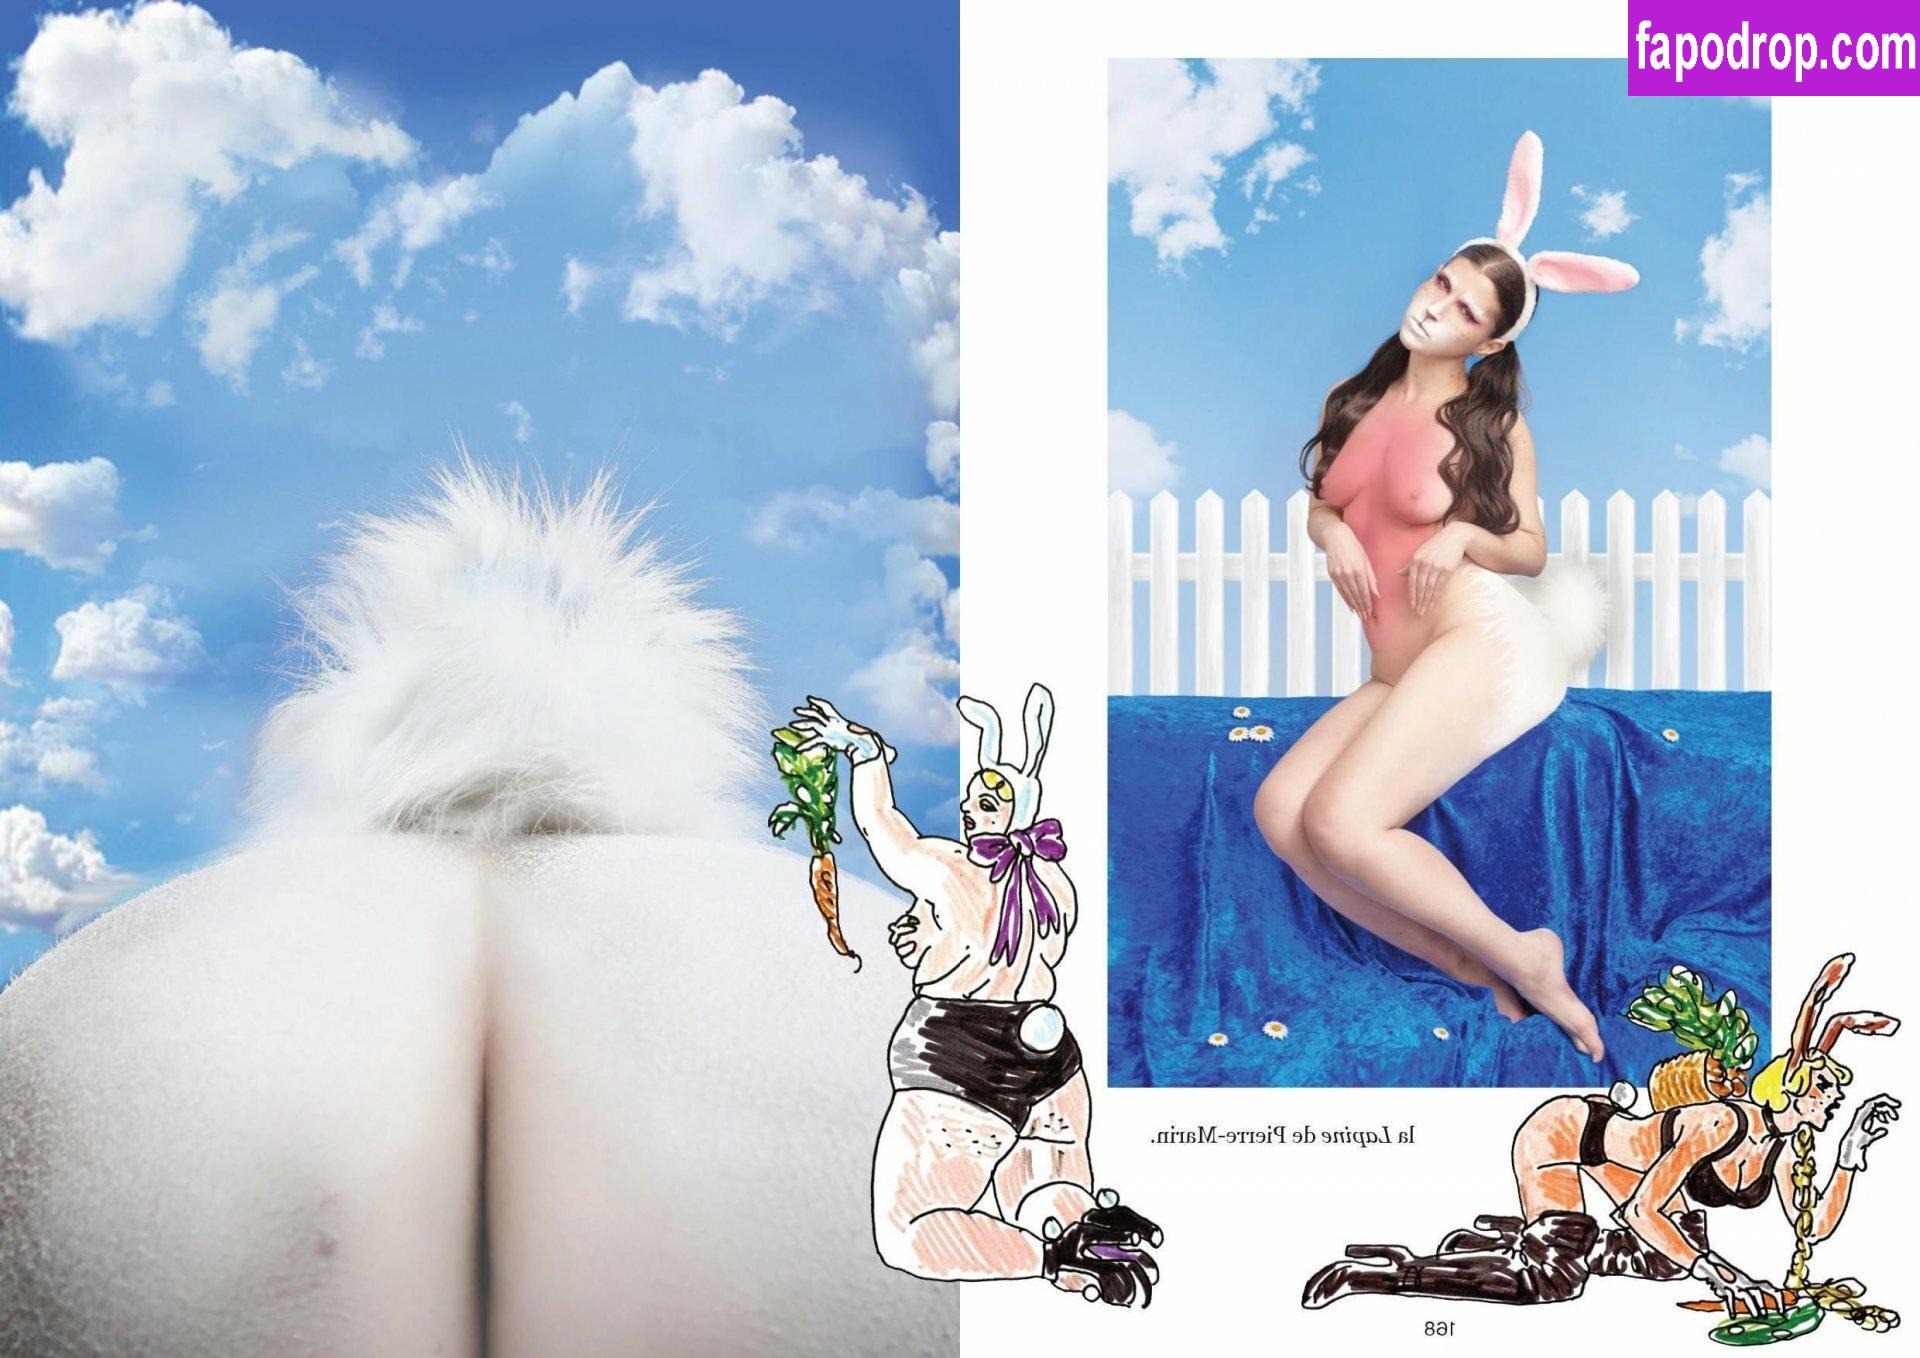 Margaux Laurens / laurensneel leak of nude photo #0011 from OnlyFans or Patreon